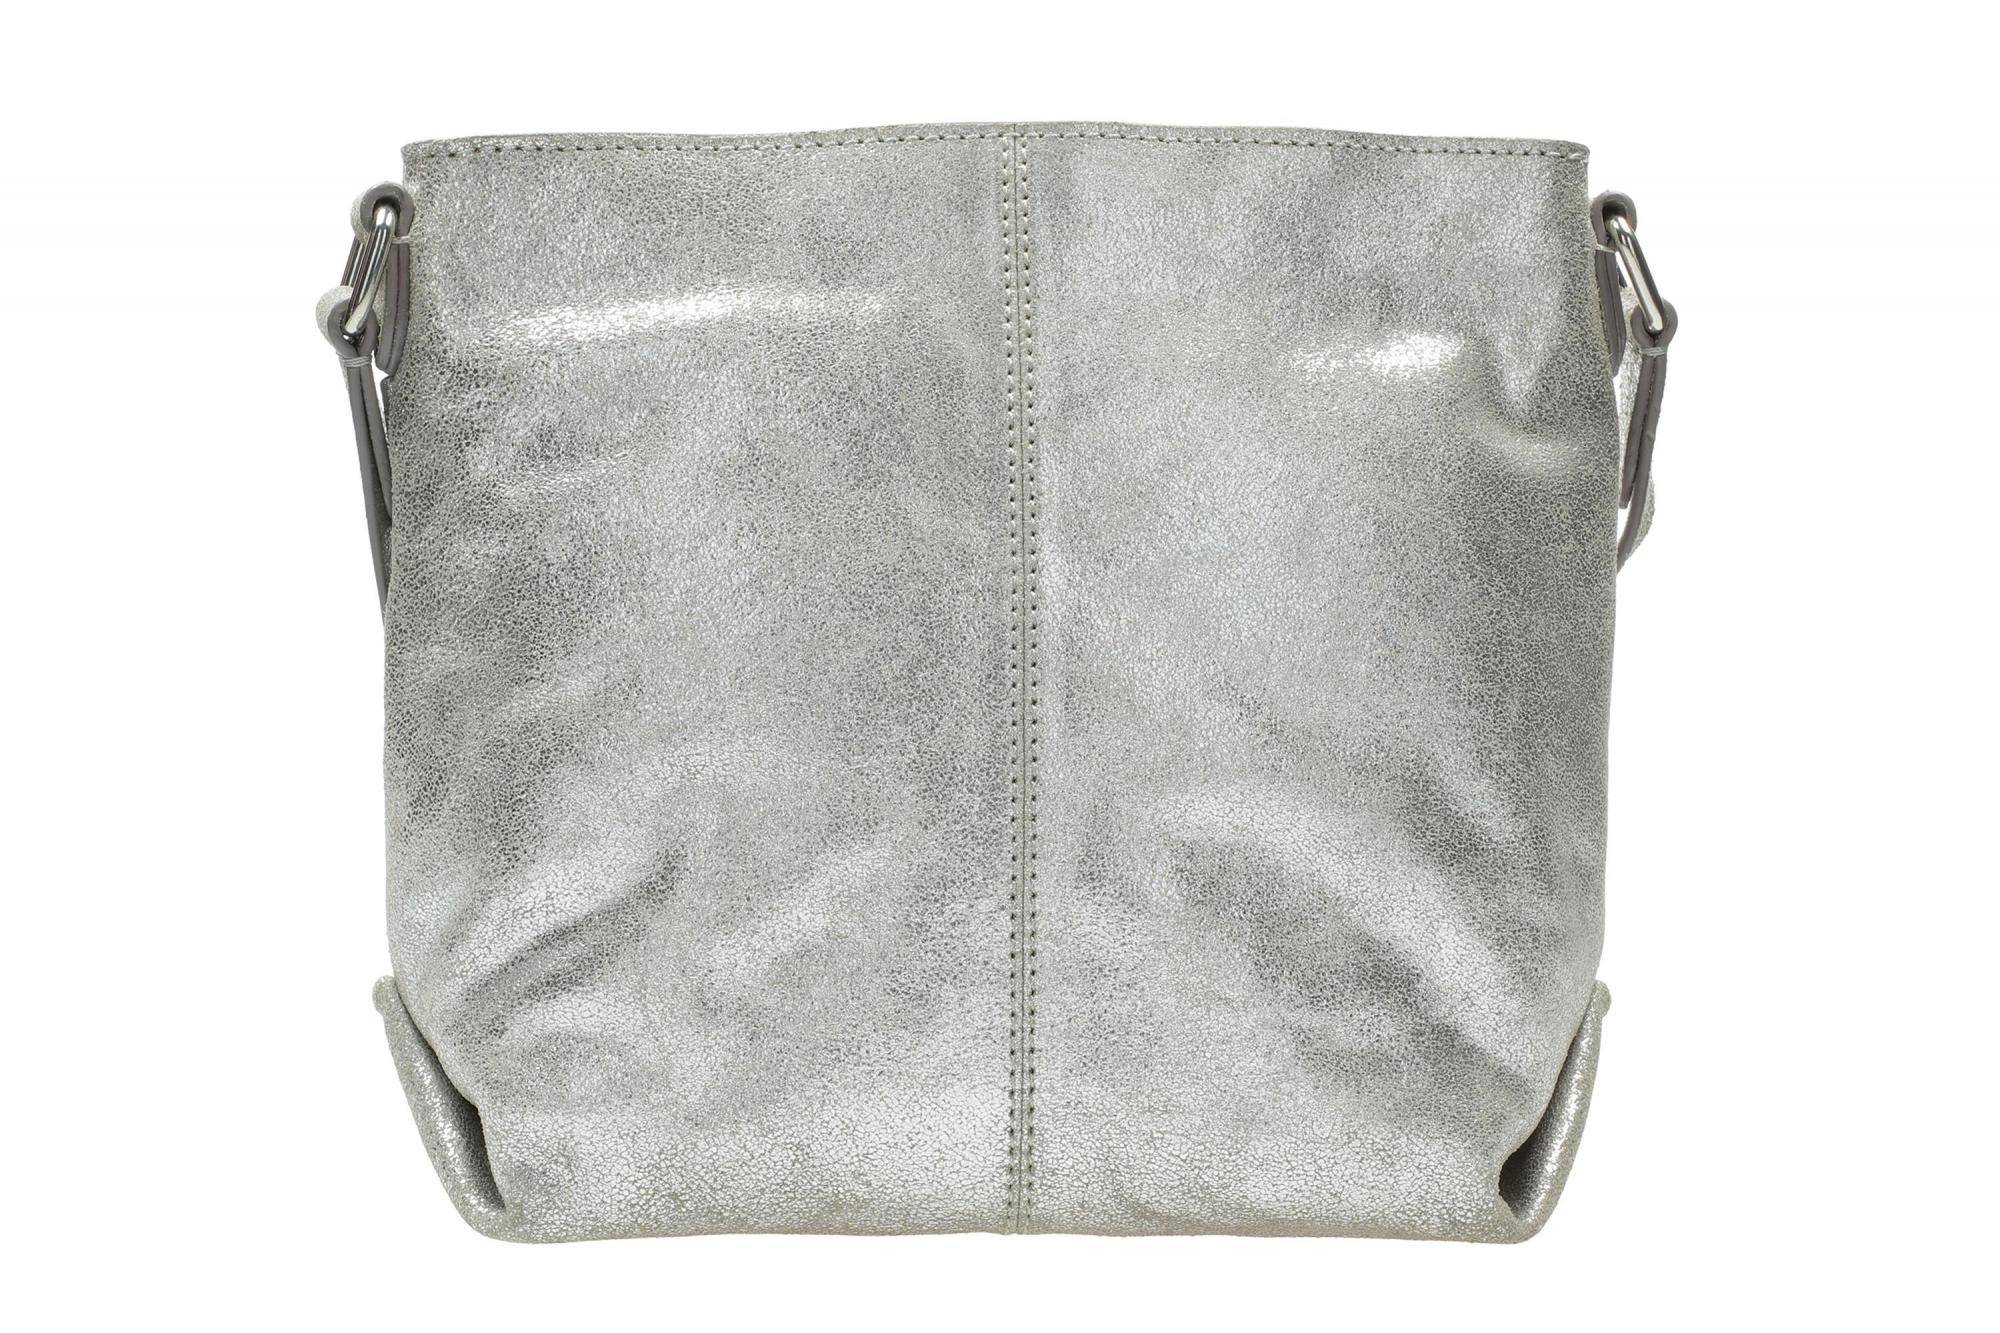 Купить городская сумка для женщин серебряный, Модель: Topsham Charm, арт: 26141360 - наличии